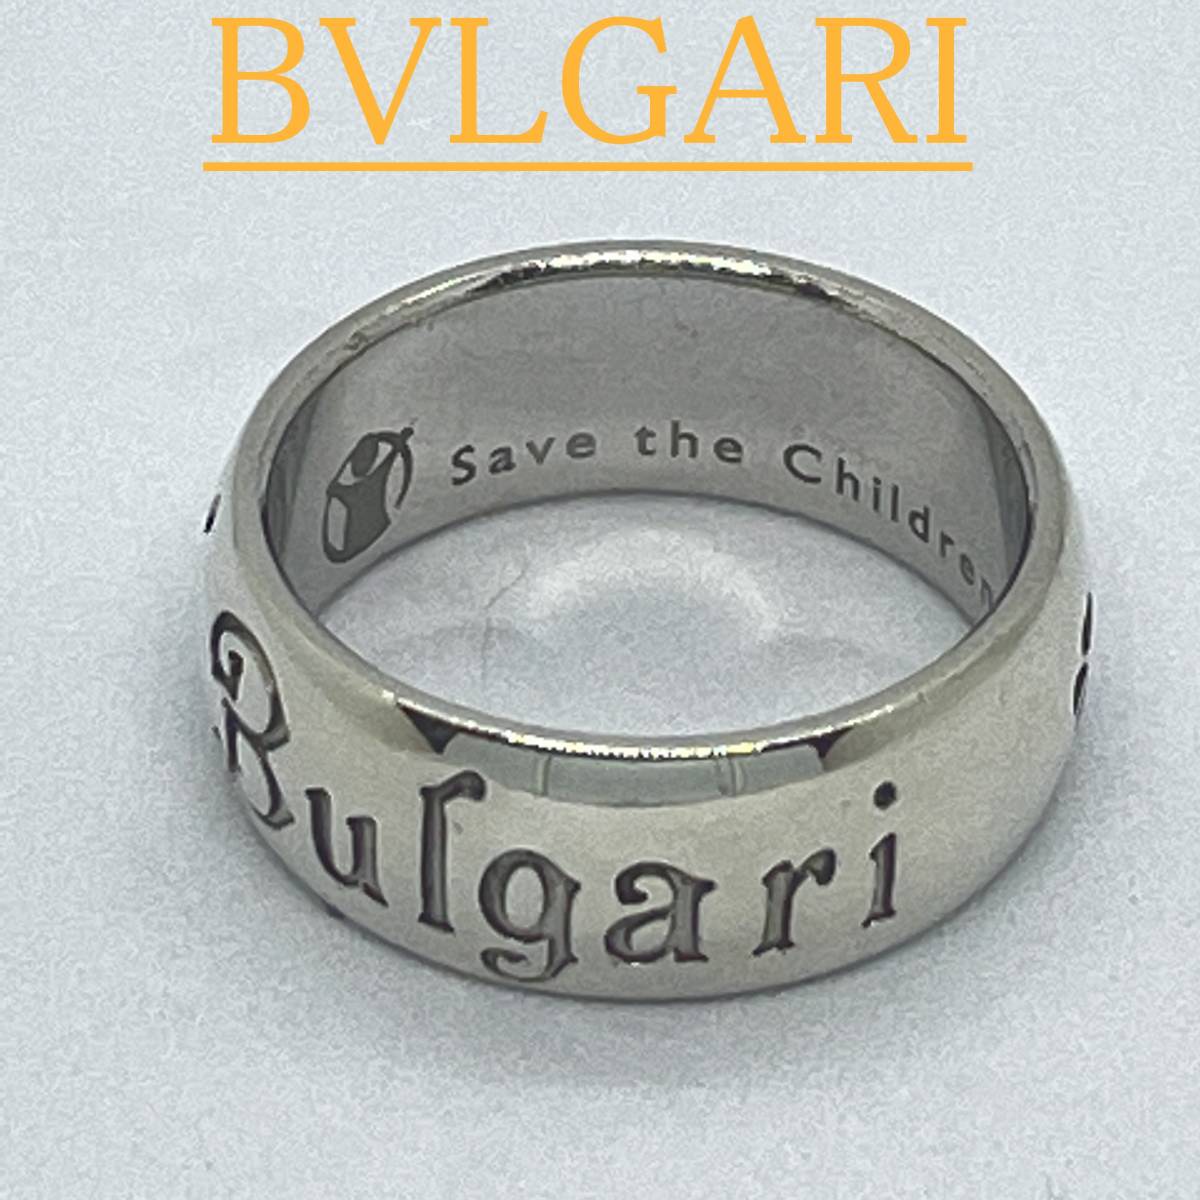 割引クーポン配布中!! BVLGARI BVLGARI ブルガリ 指輪